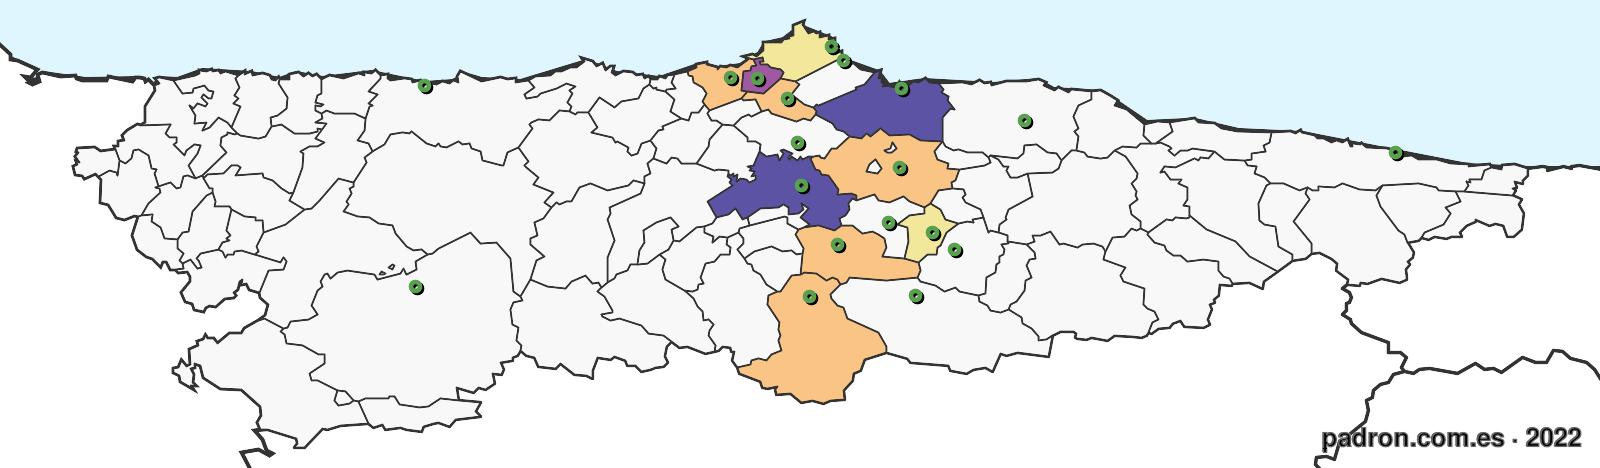 salvadoreños en asturias.